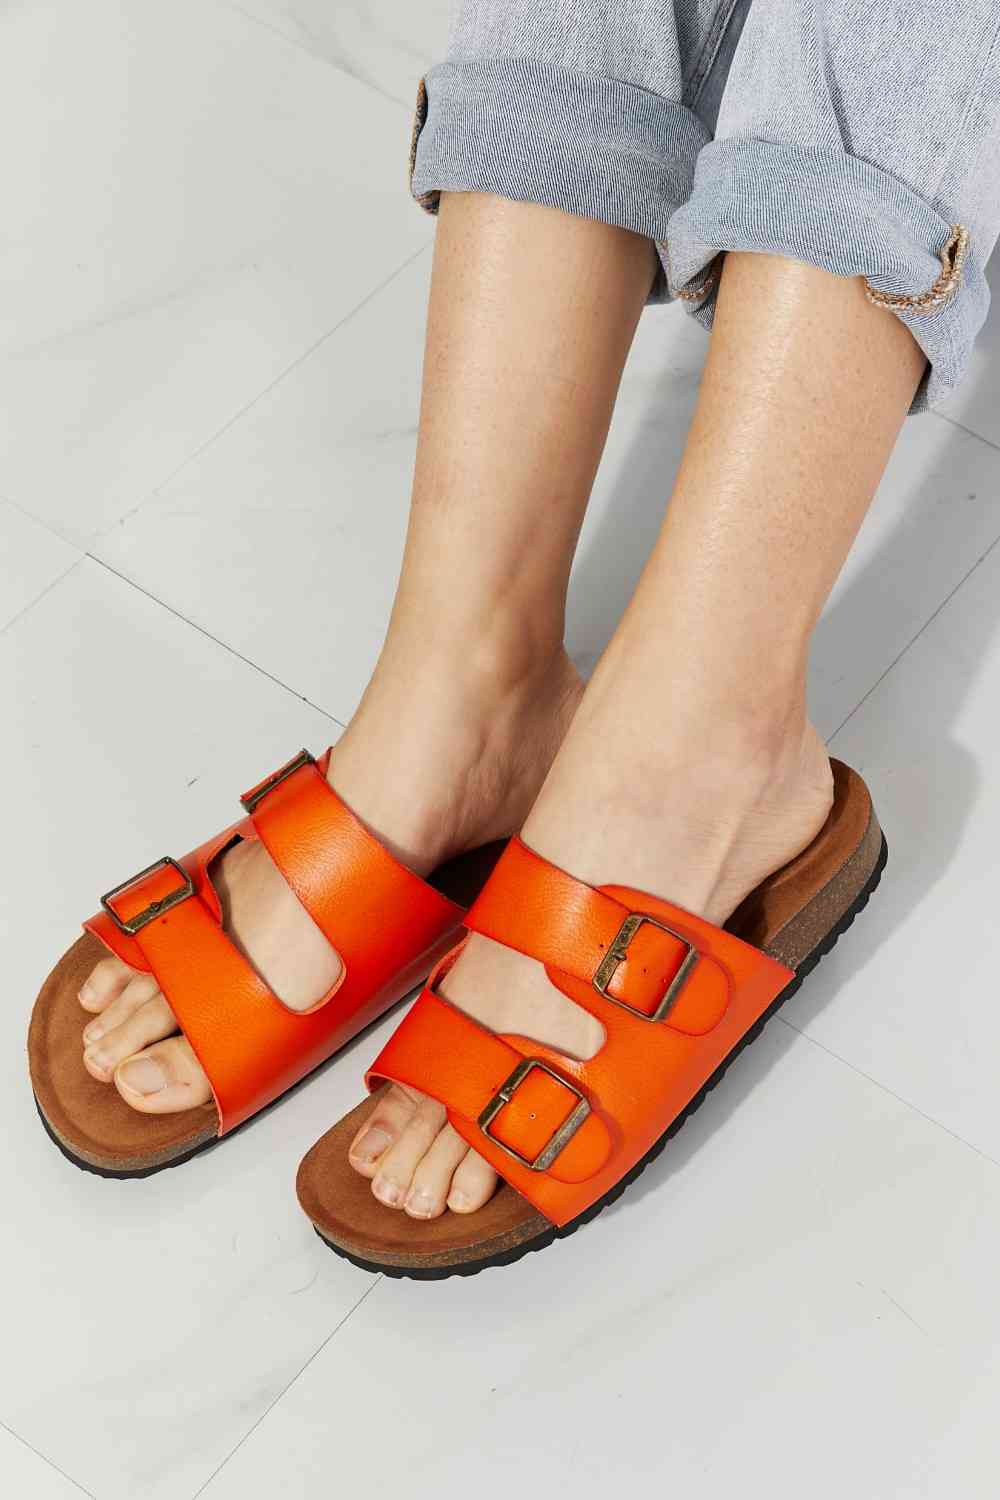 MMShoes Feeling Alive Double Banded Slide Sandals in Orange - Alonna's Legging Land